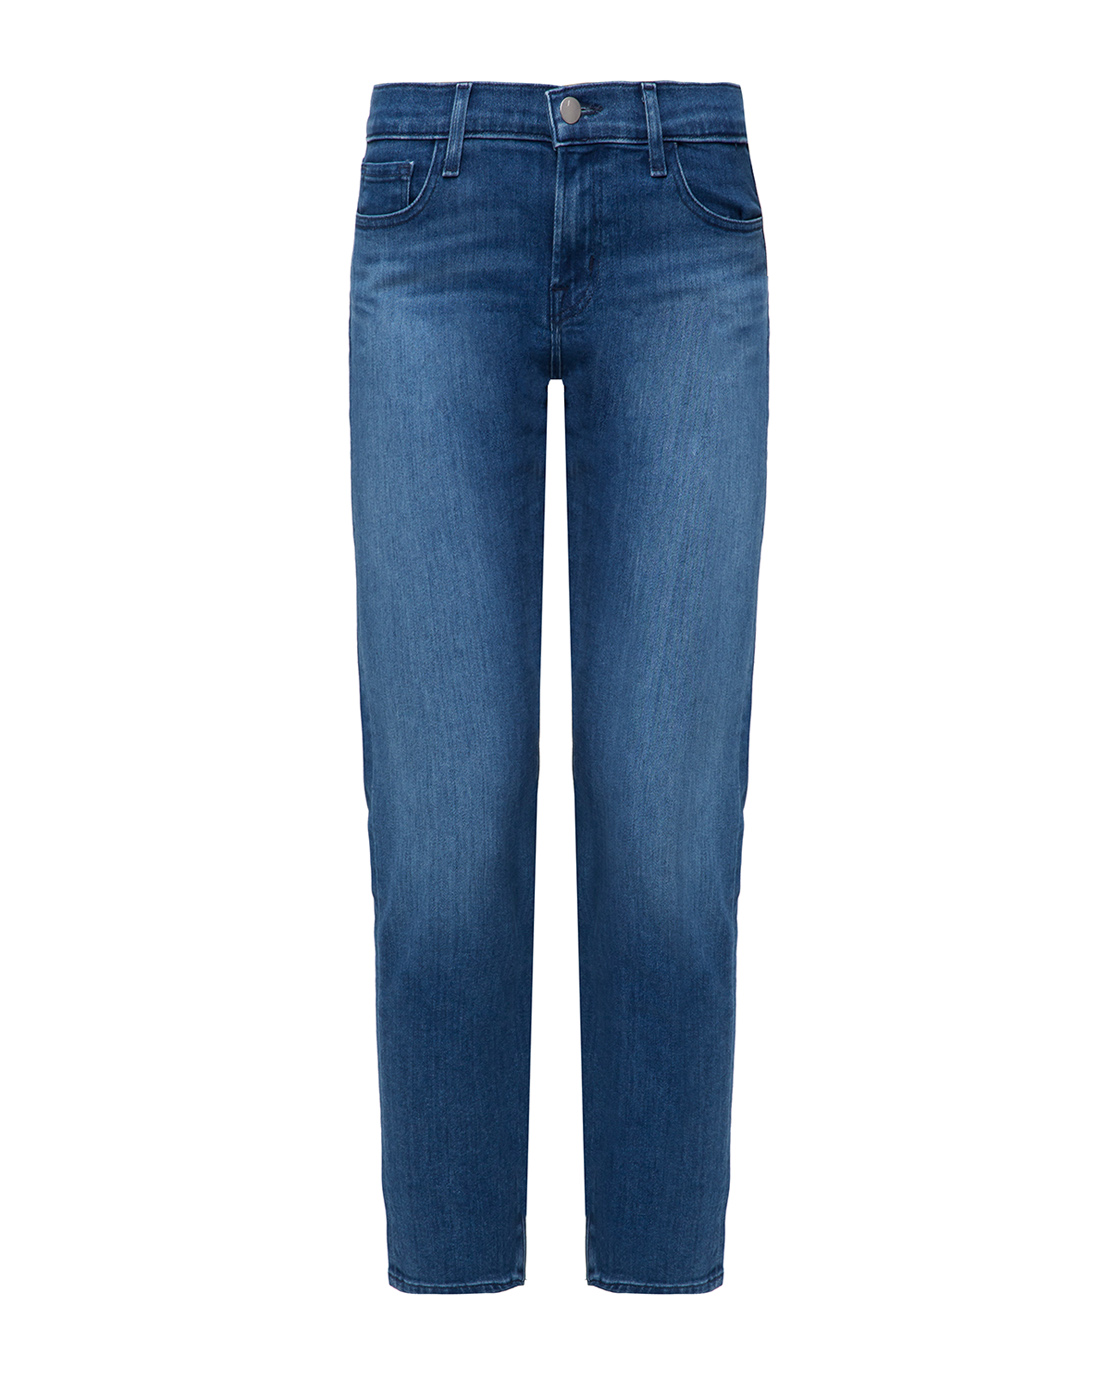 Женские синие джинсы J BRAND SJB002186-1